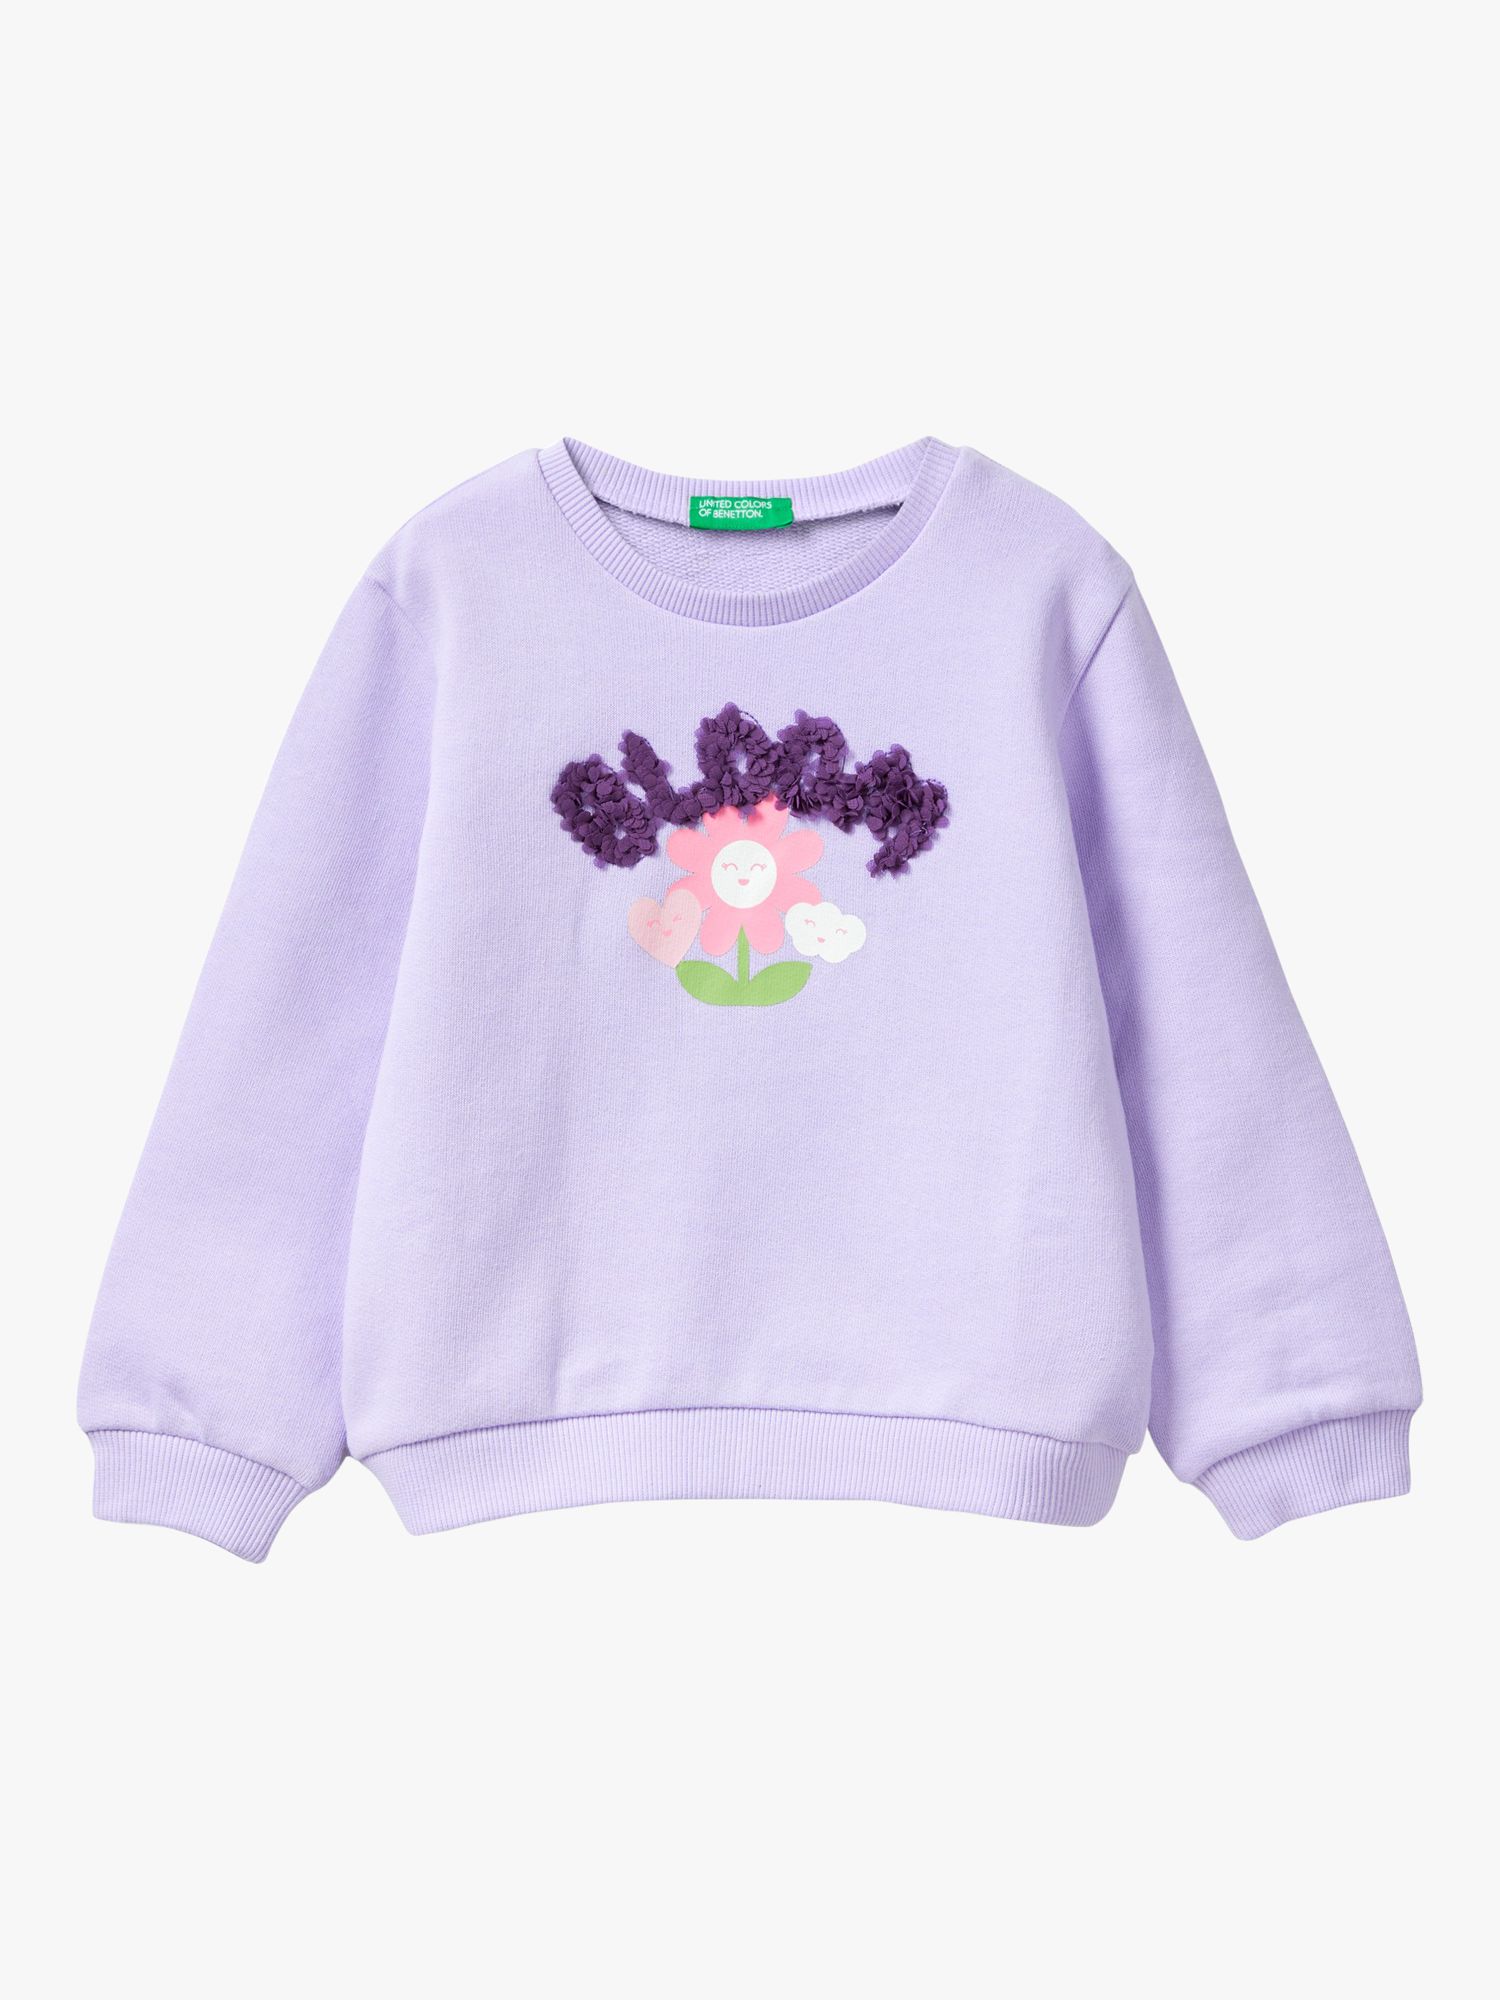 Buy Benetton Kids' Bloom Applique Sweatshirt, Mauve Online at johnlewis.com